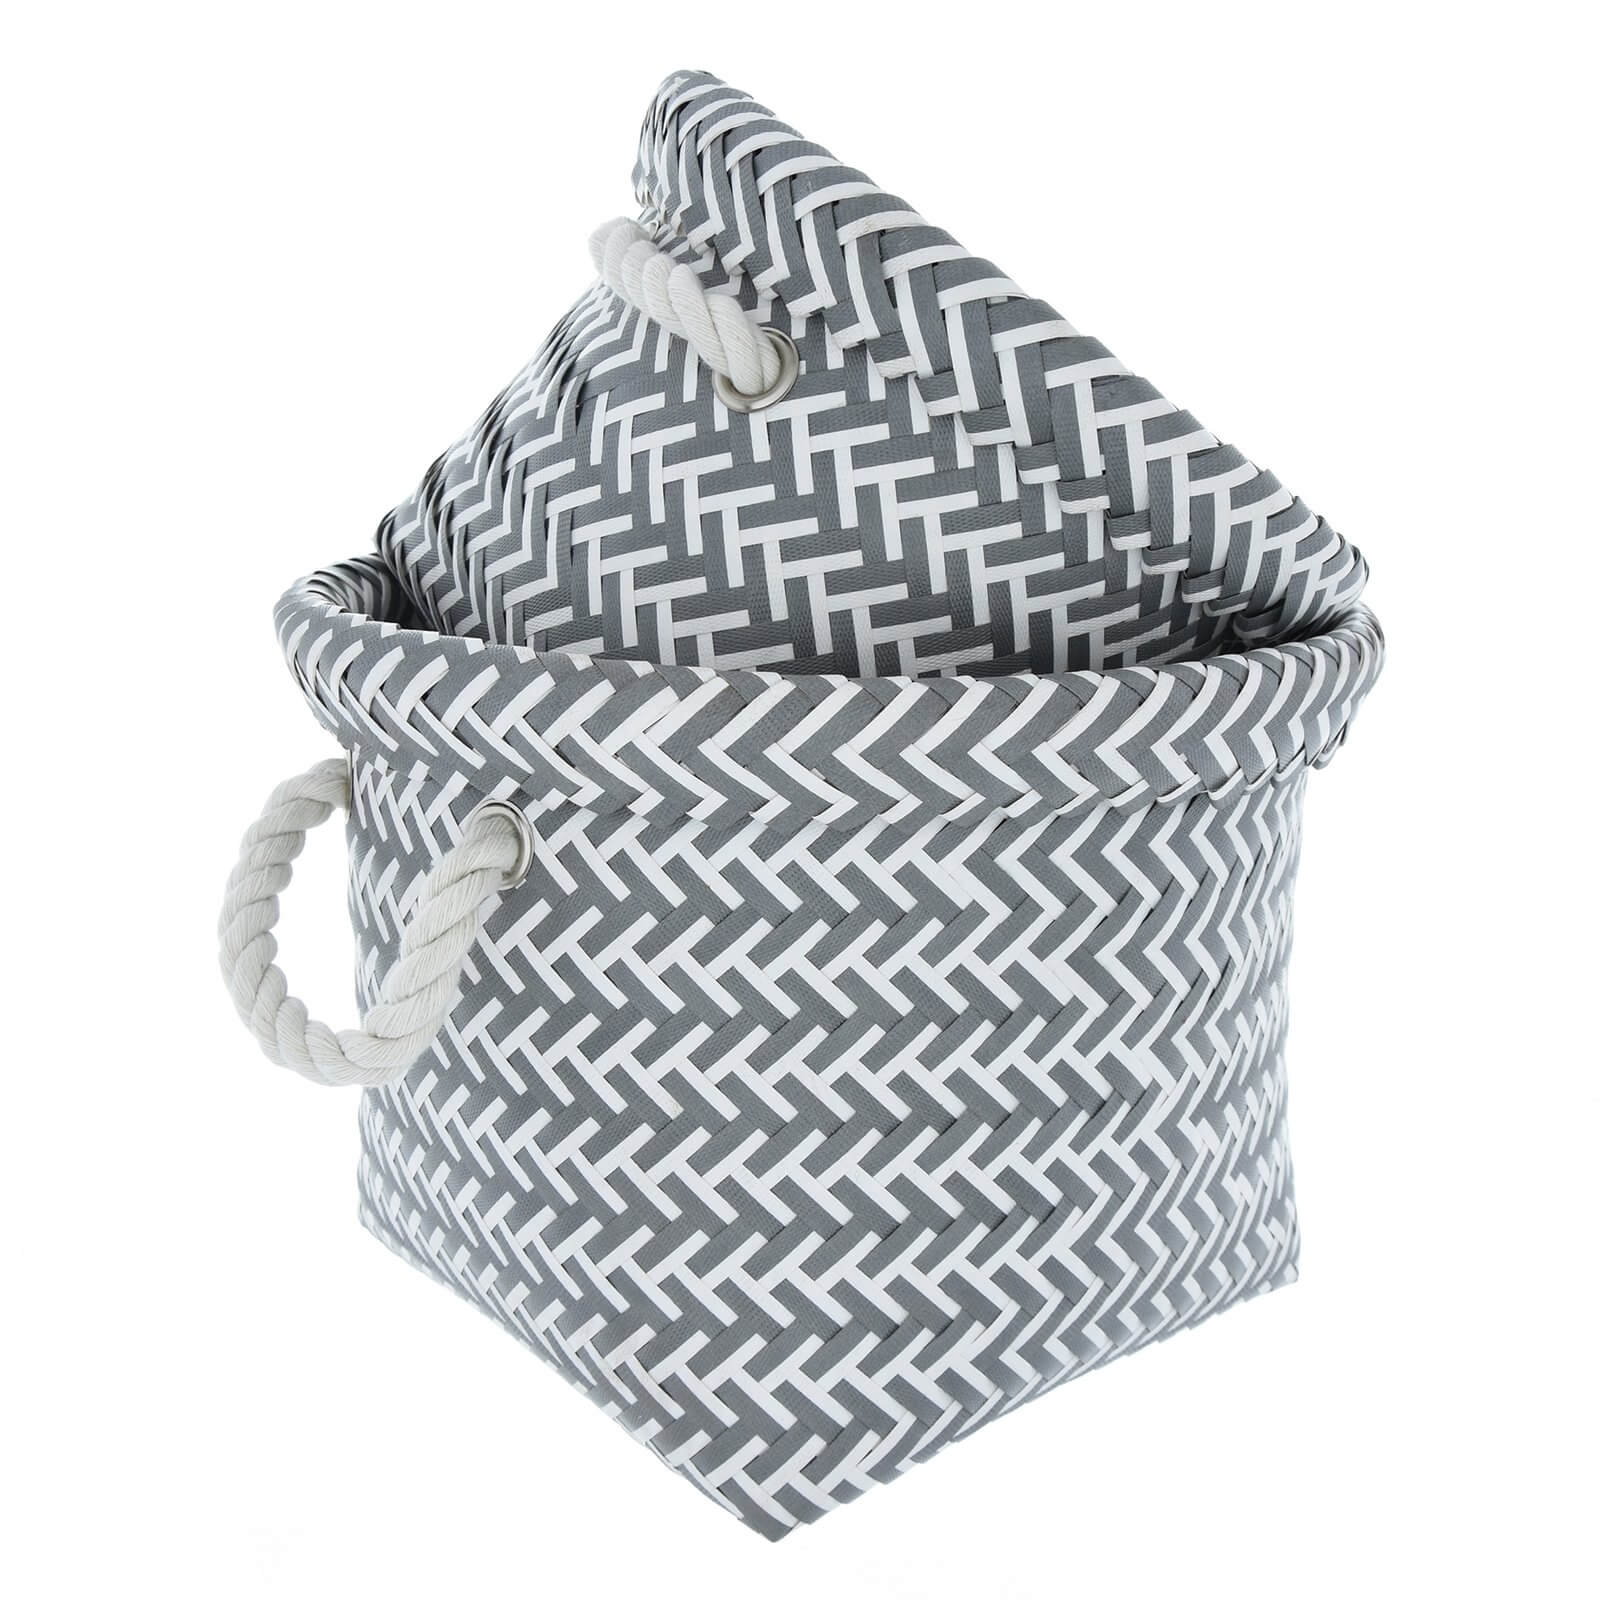 Storage Baskets - Grey & White - Set of 2